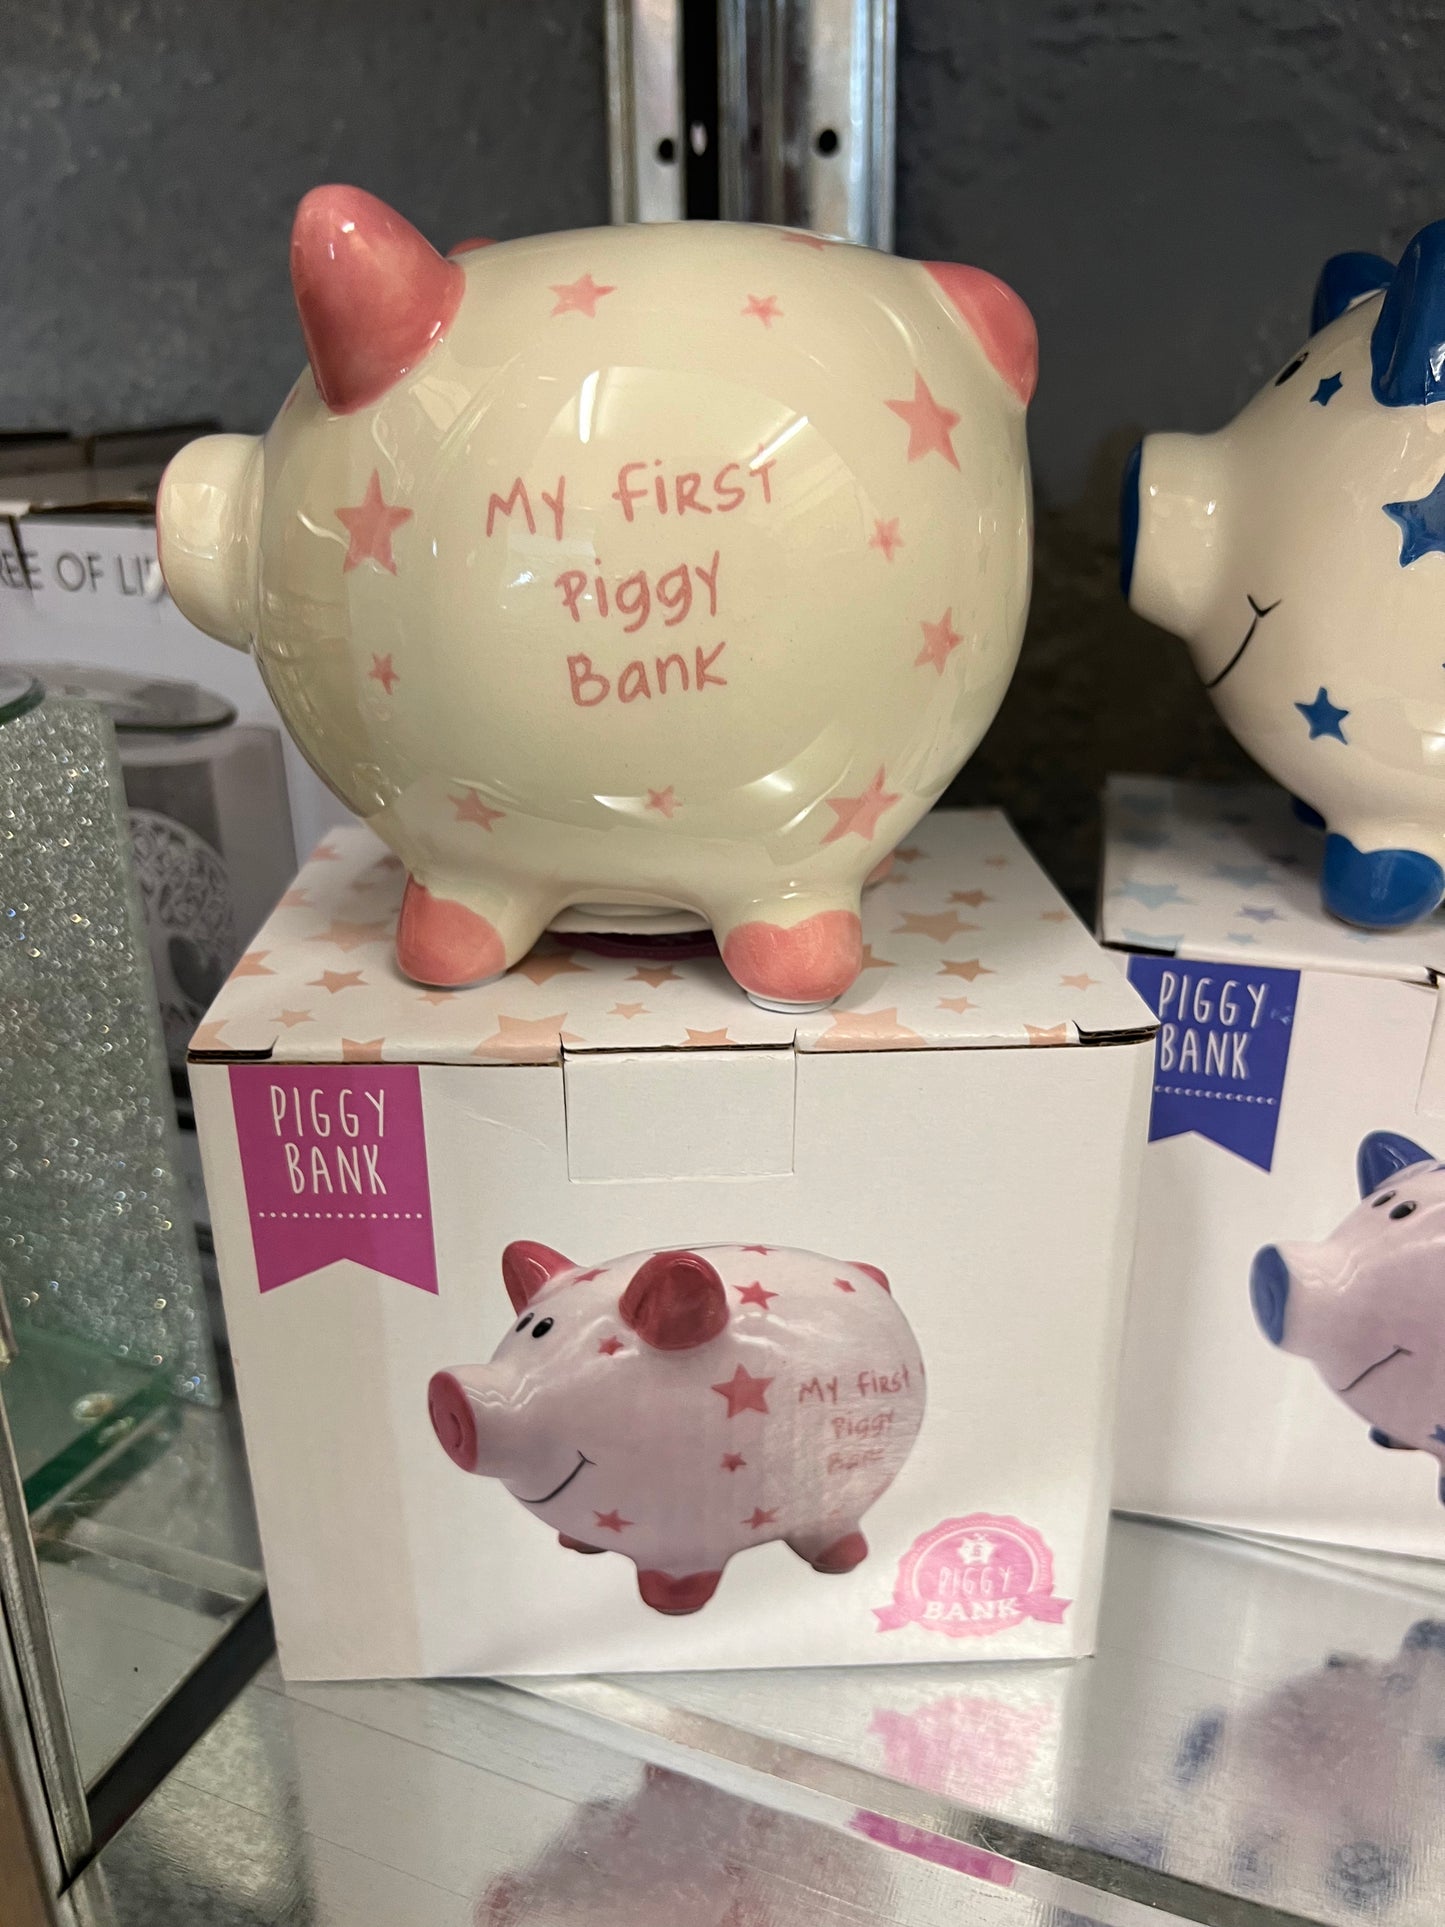 My first piggy bank